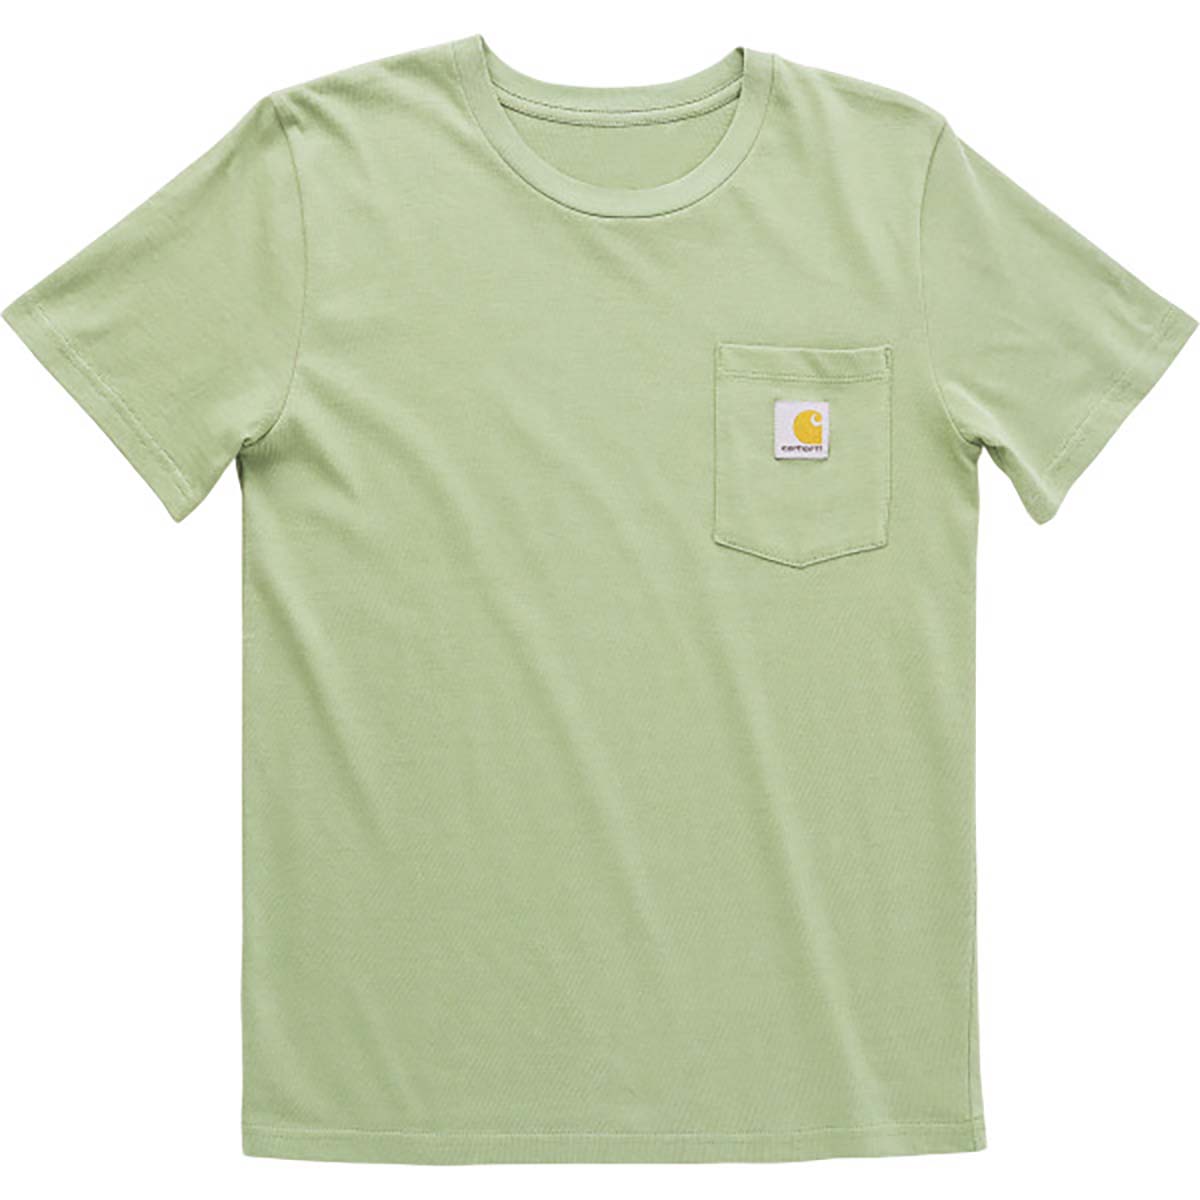 Carhartt Kids' SS Pocket T-Shirt